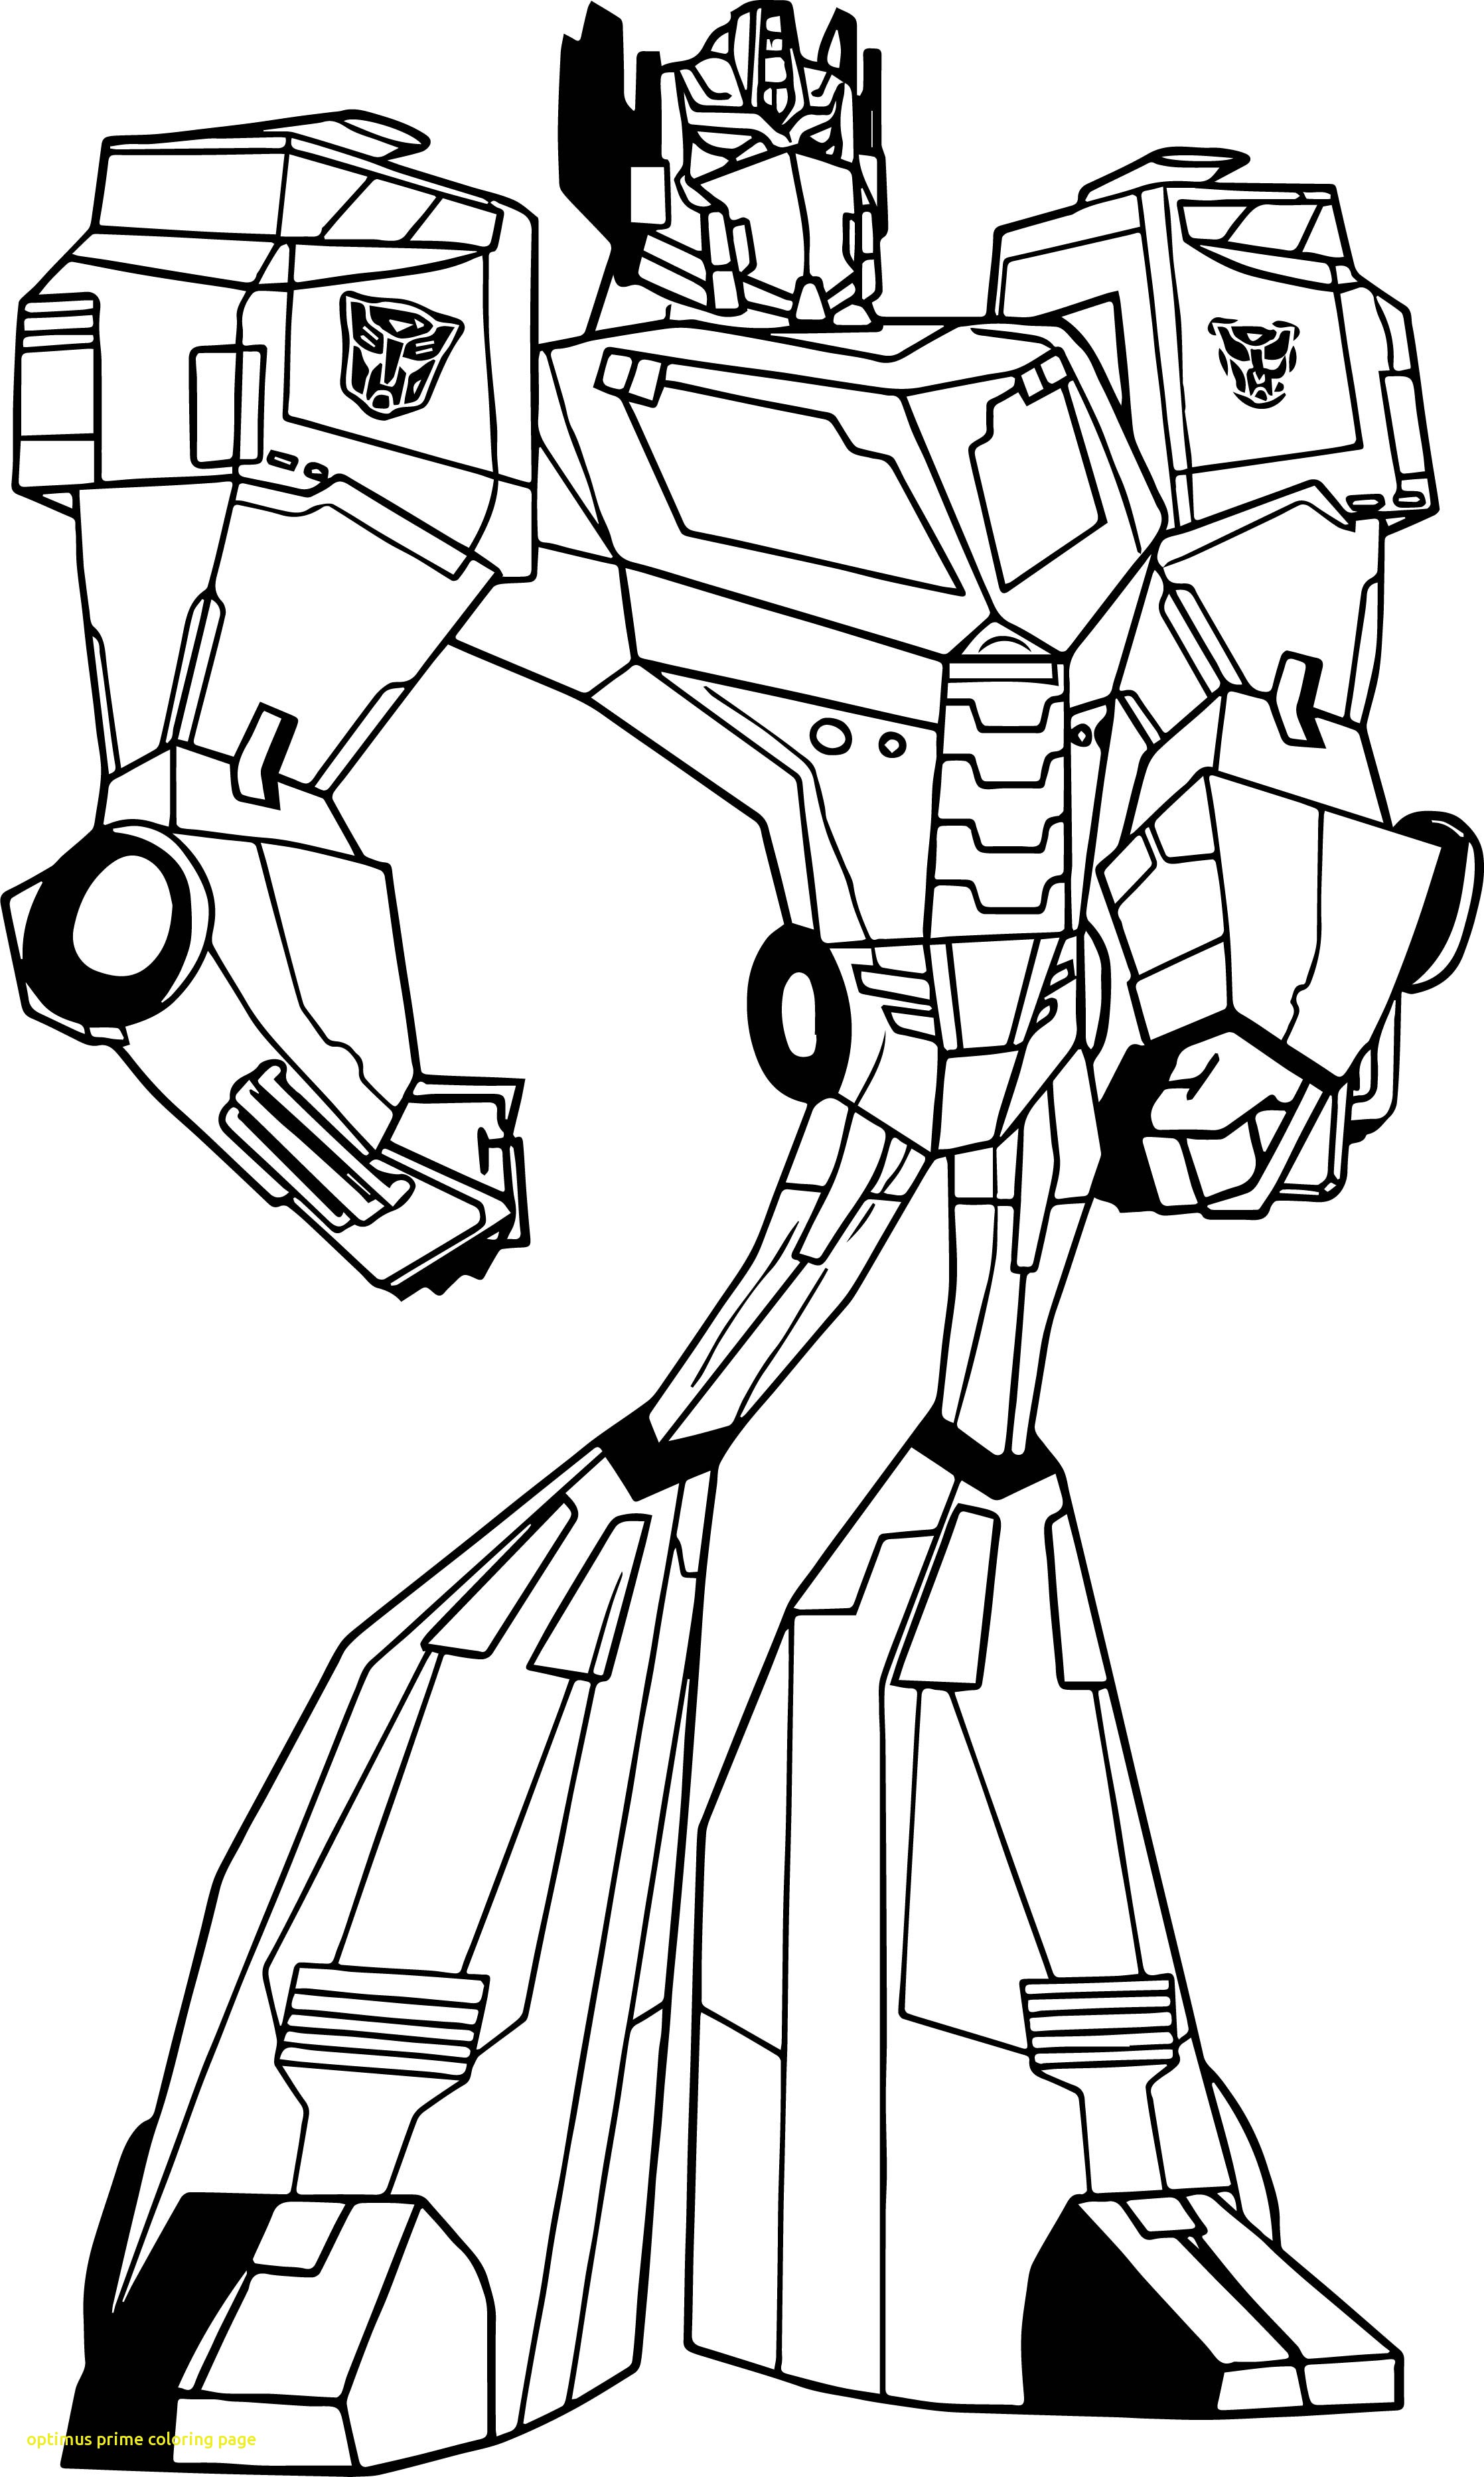 Tranh tȏ màu Optimus, siêu phẩm người máy biến hình